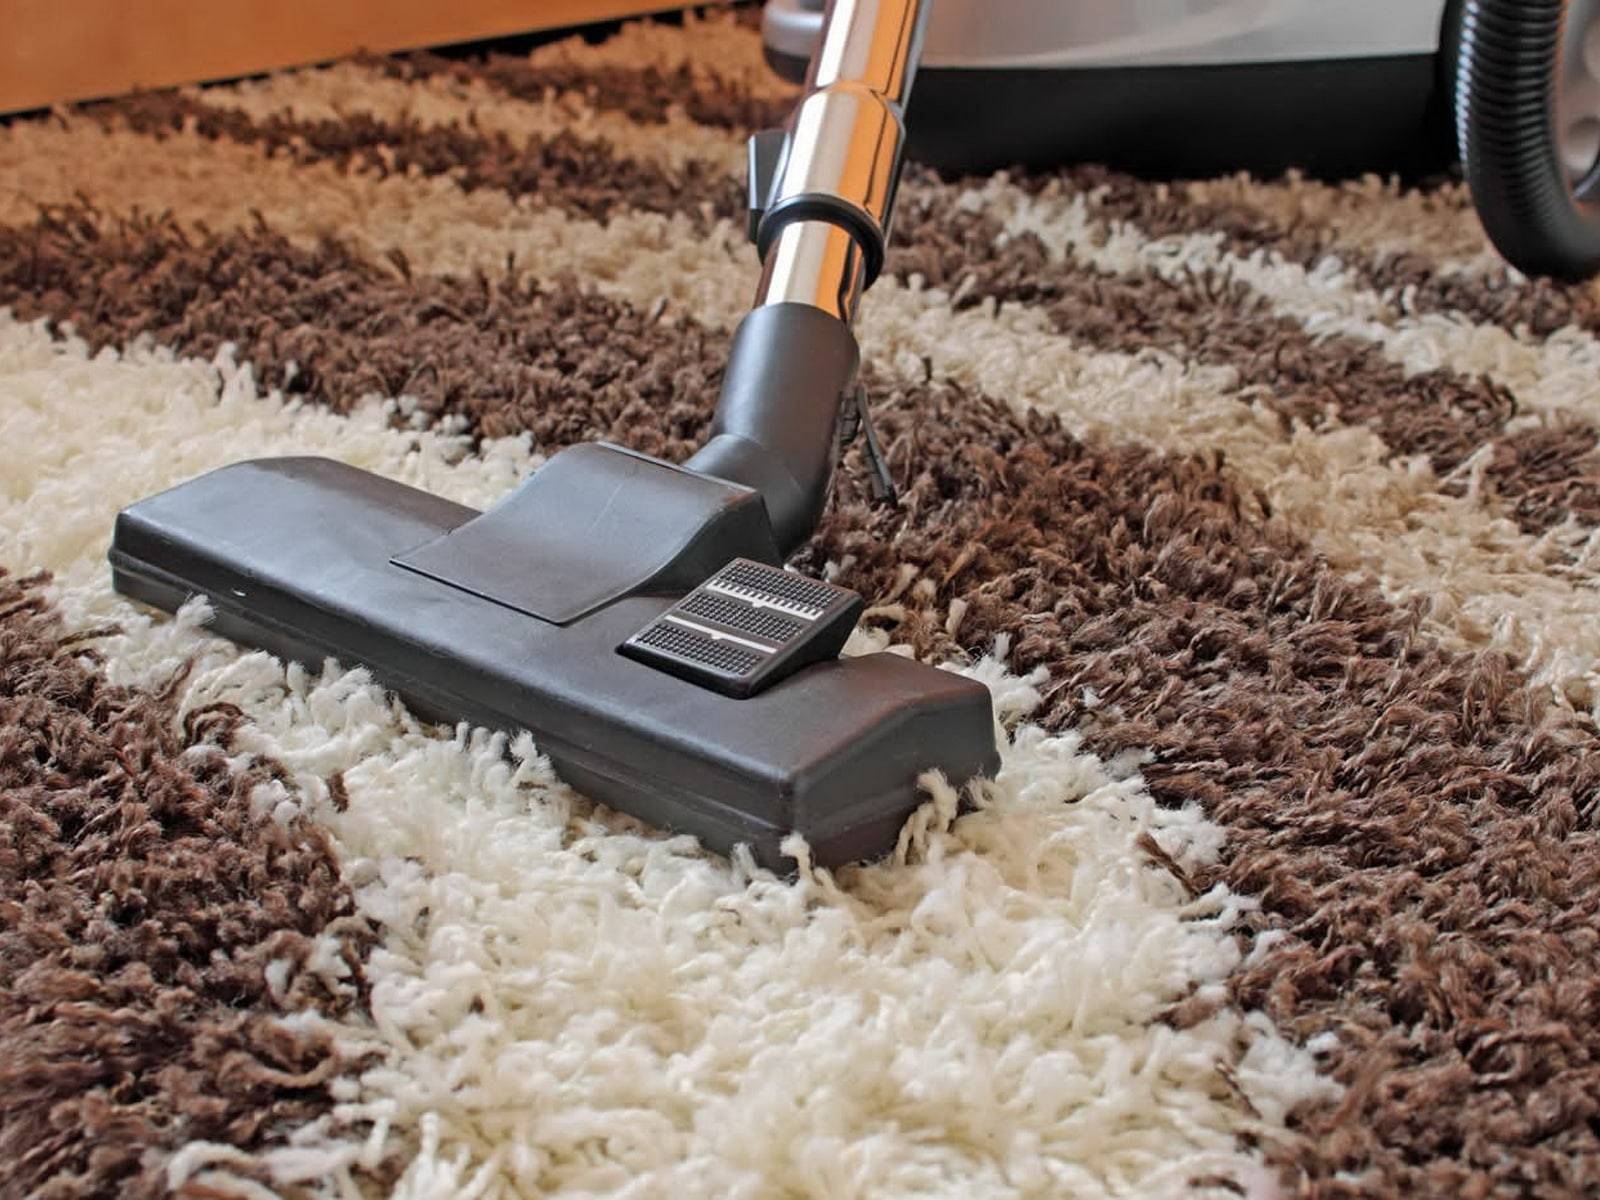 Чем и как почистить ковролин в домашних условиях прямо на полу: сухая, влажная и пенная чистка, народные средства